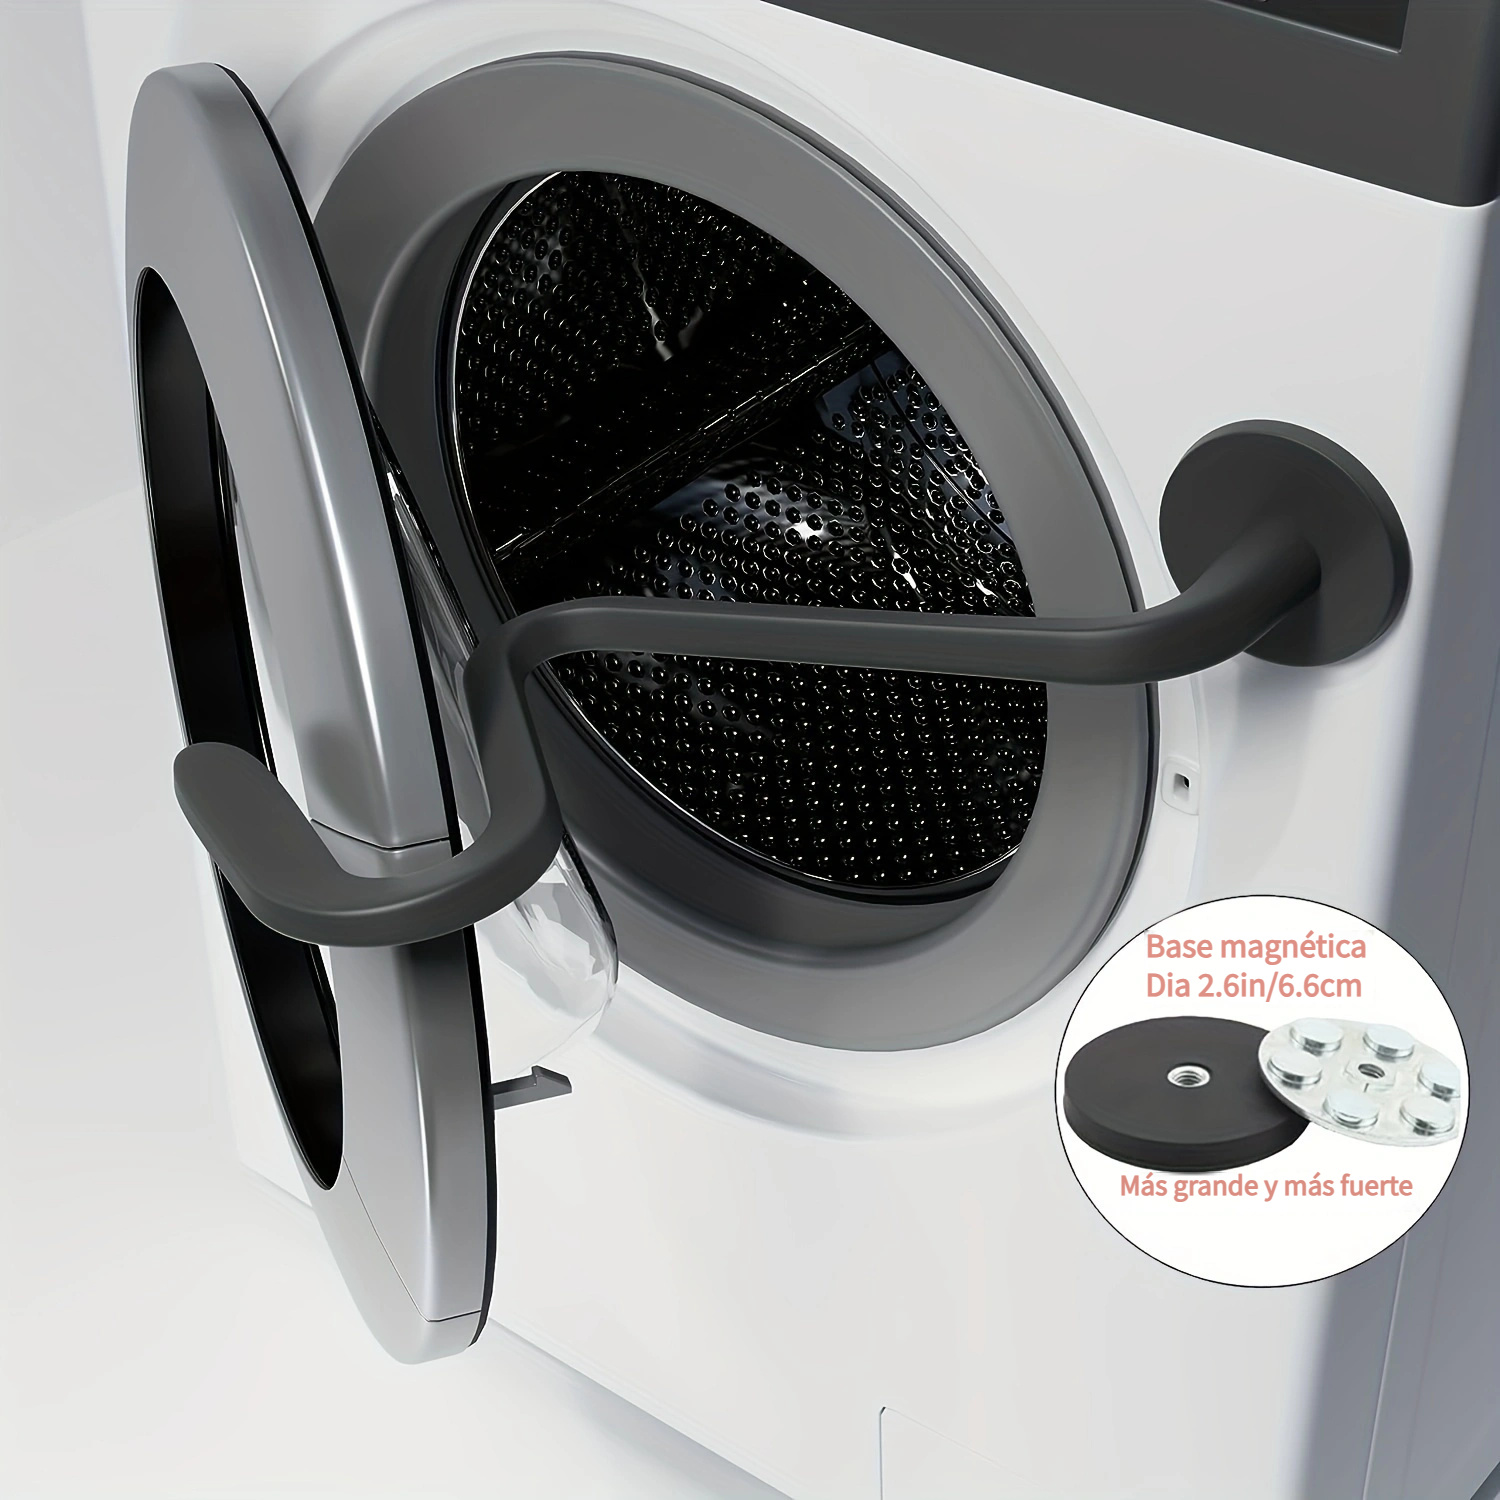 Accesorio para puerta de lavadora, soporte de puerta de lavadora de carga  frontal mantiene la puerta abierta para mantener la lavadora seca y limpia